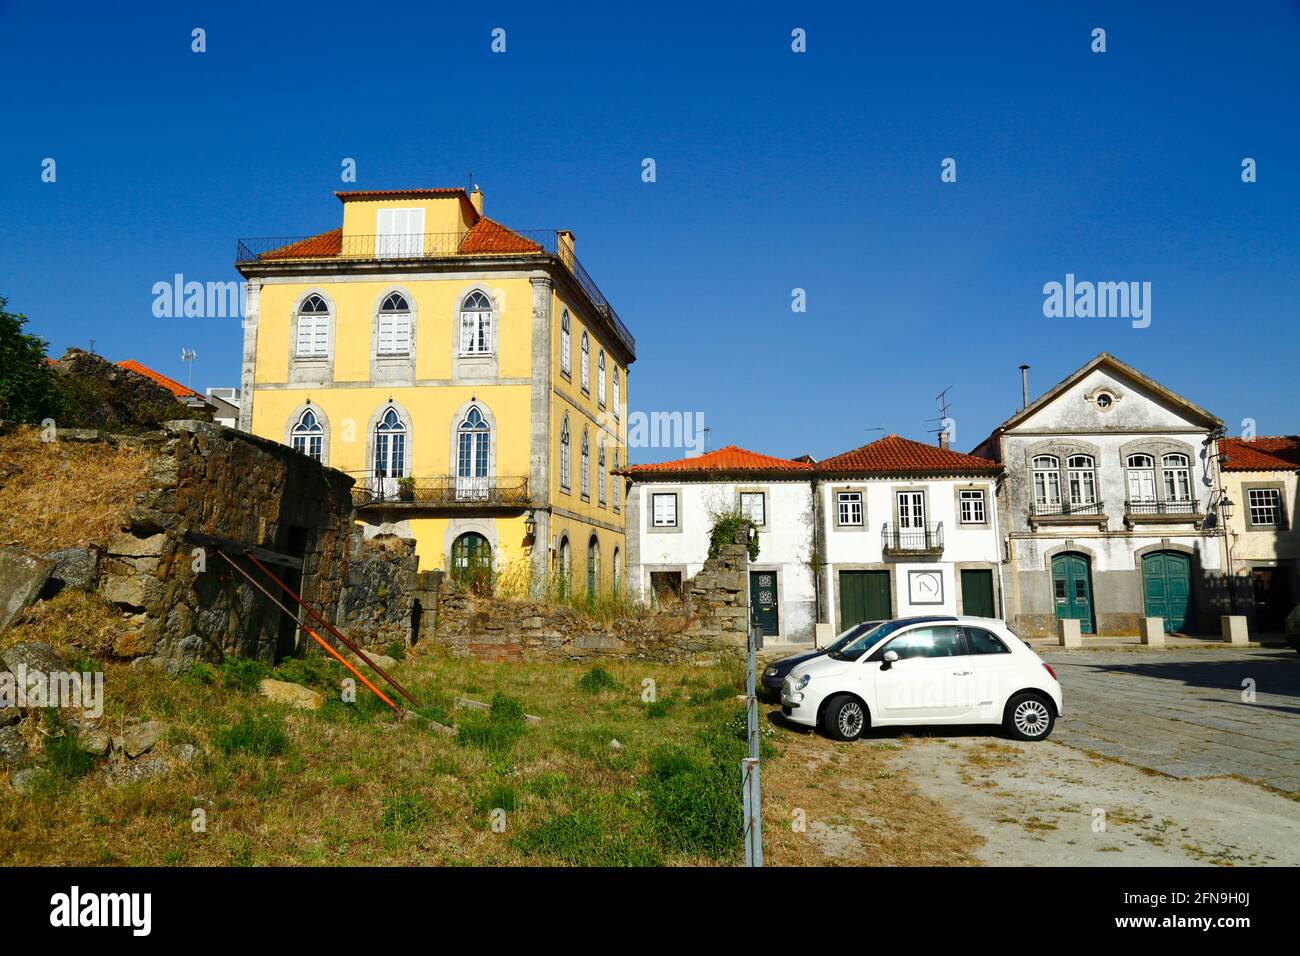 La sezione collassante del muro difensivo della città vecchia con i supporti accanto alla chiesa parrocchiale / Igreja Matriz, Caminha, provincia di Minho, Portogallo Foto Stock